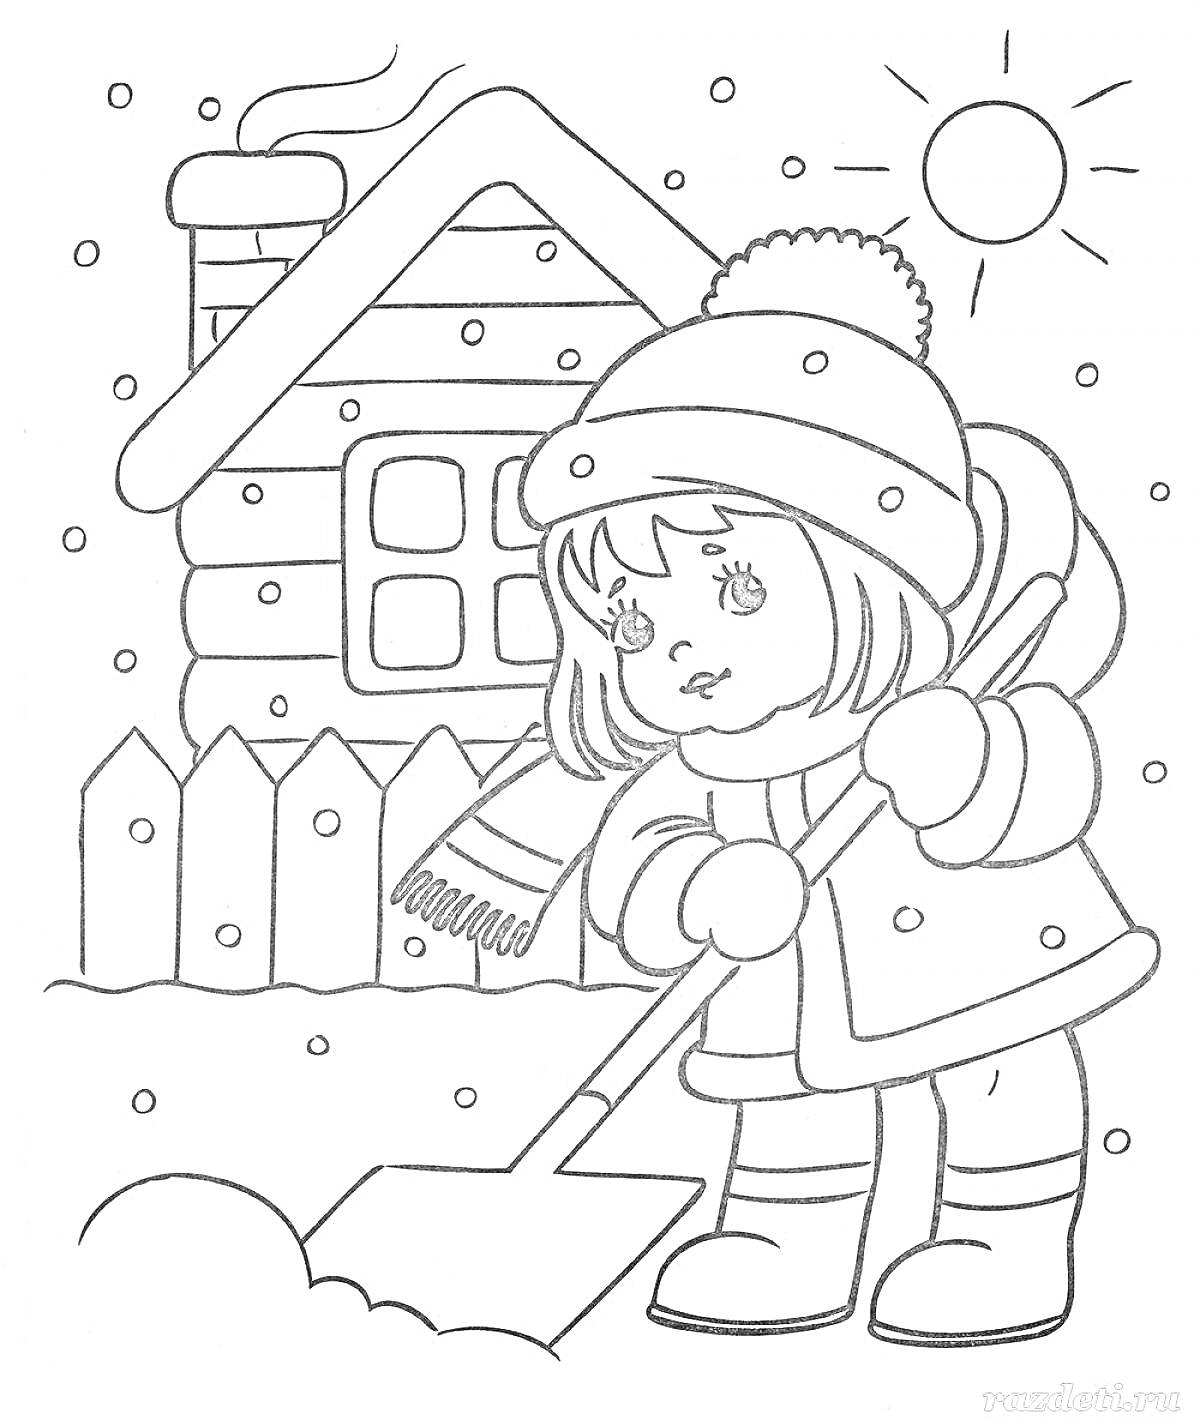 Девочка убирает снег у домика зимой